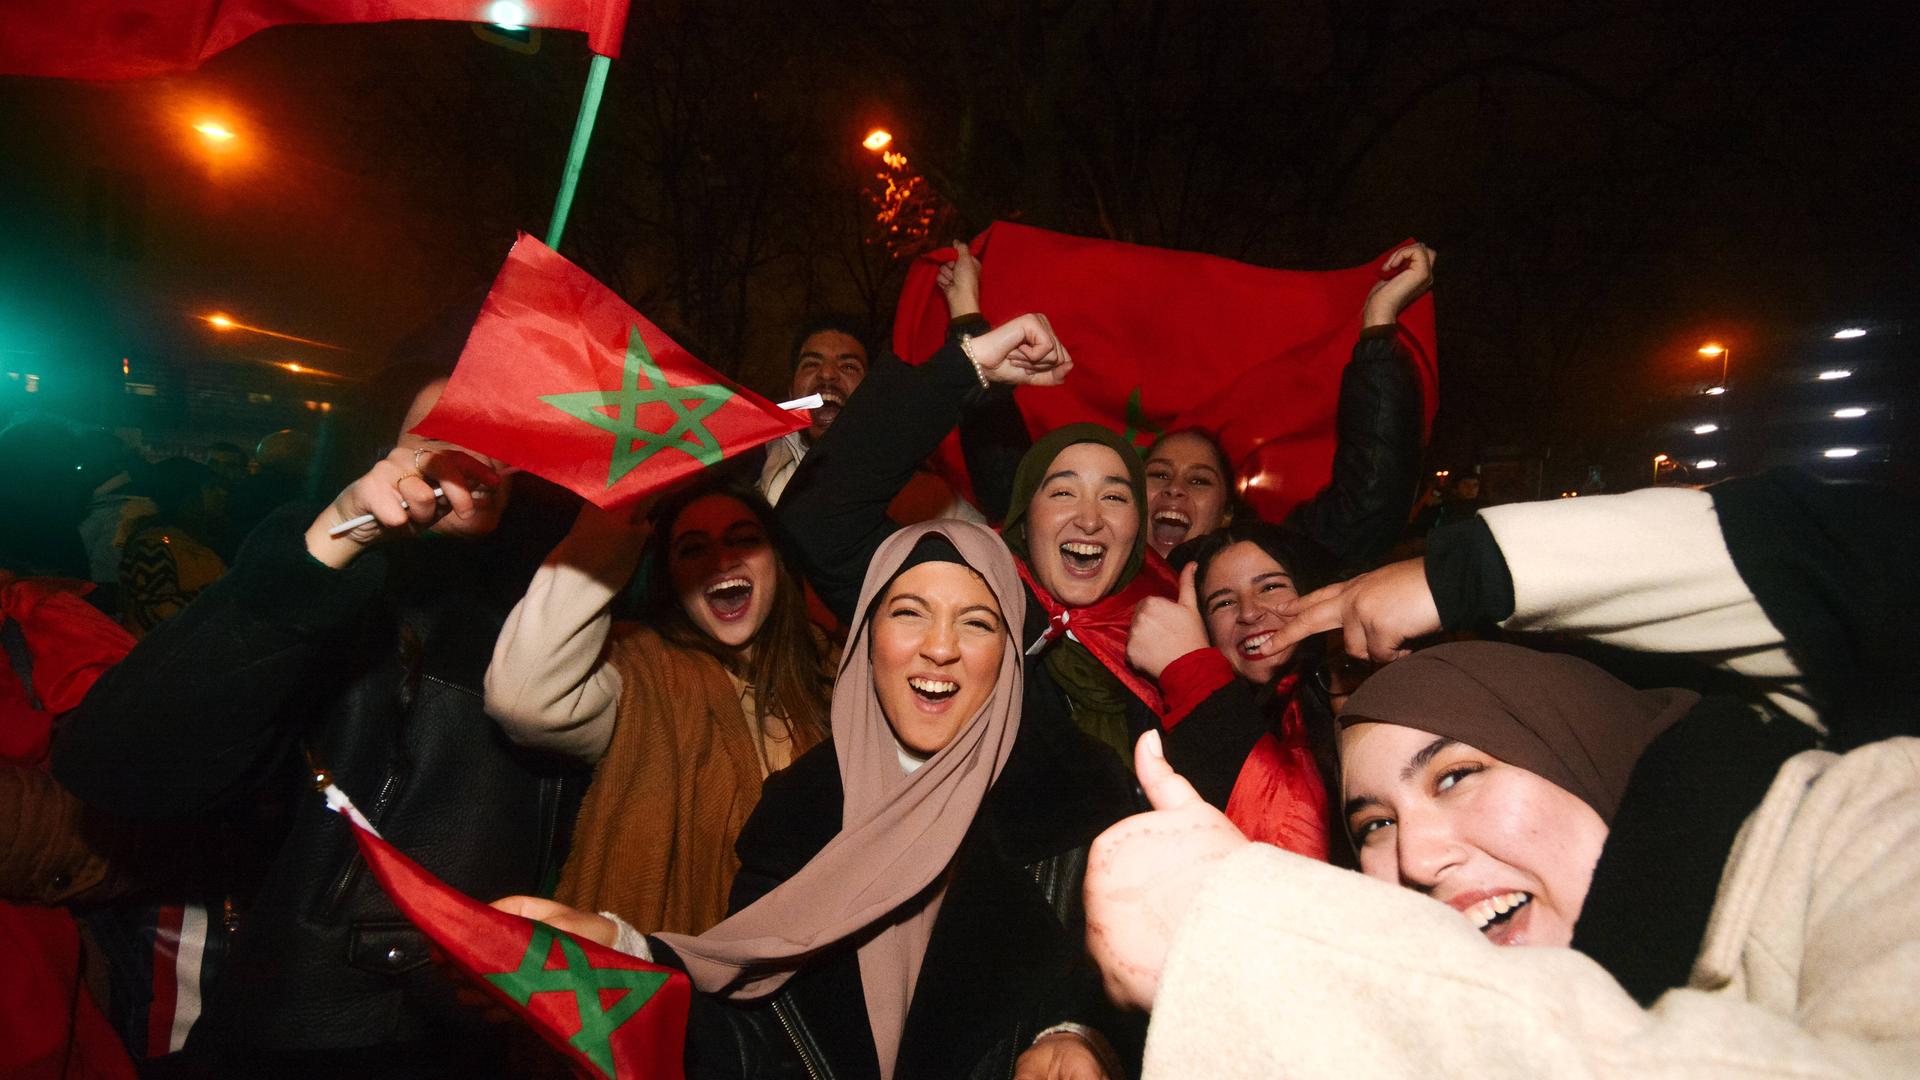 Nach dem Sieg Marokkos gegen Portugal im WM-Halbinfale feiern die Fans auch in Düsseldorf 